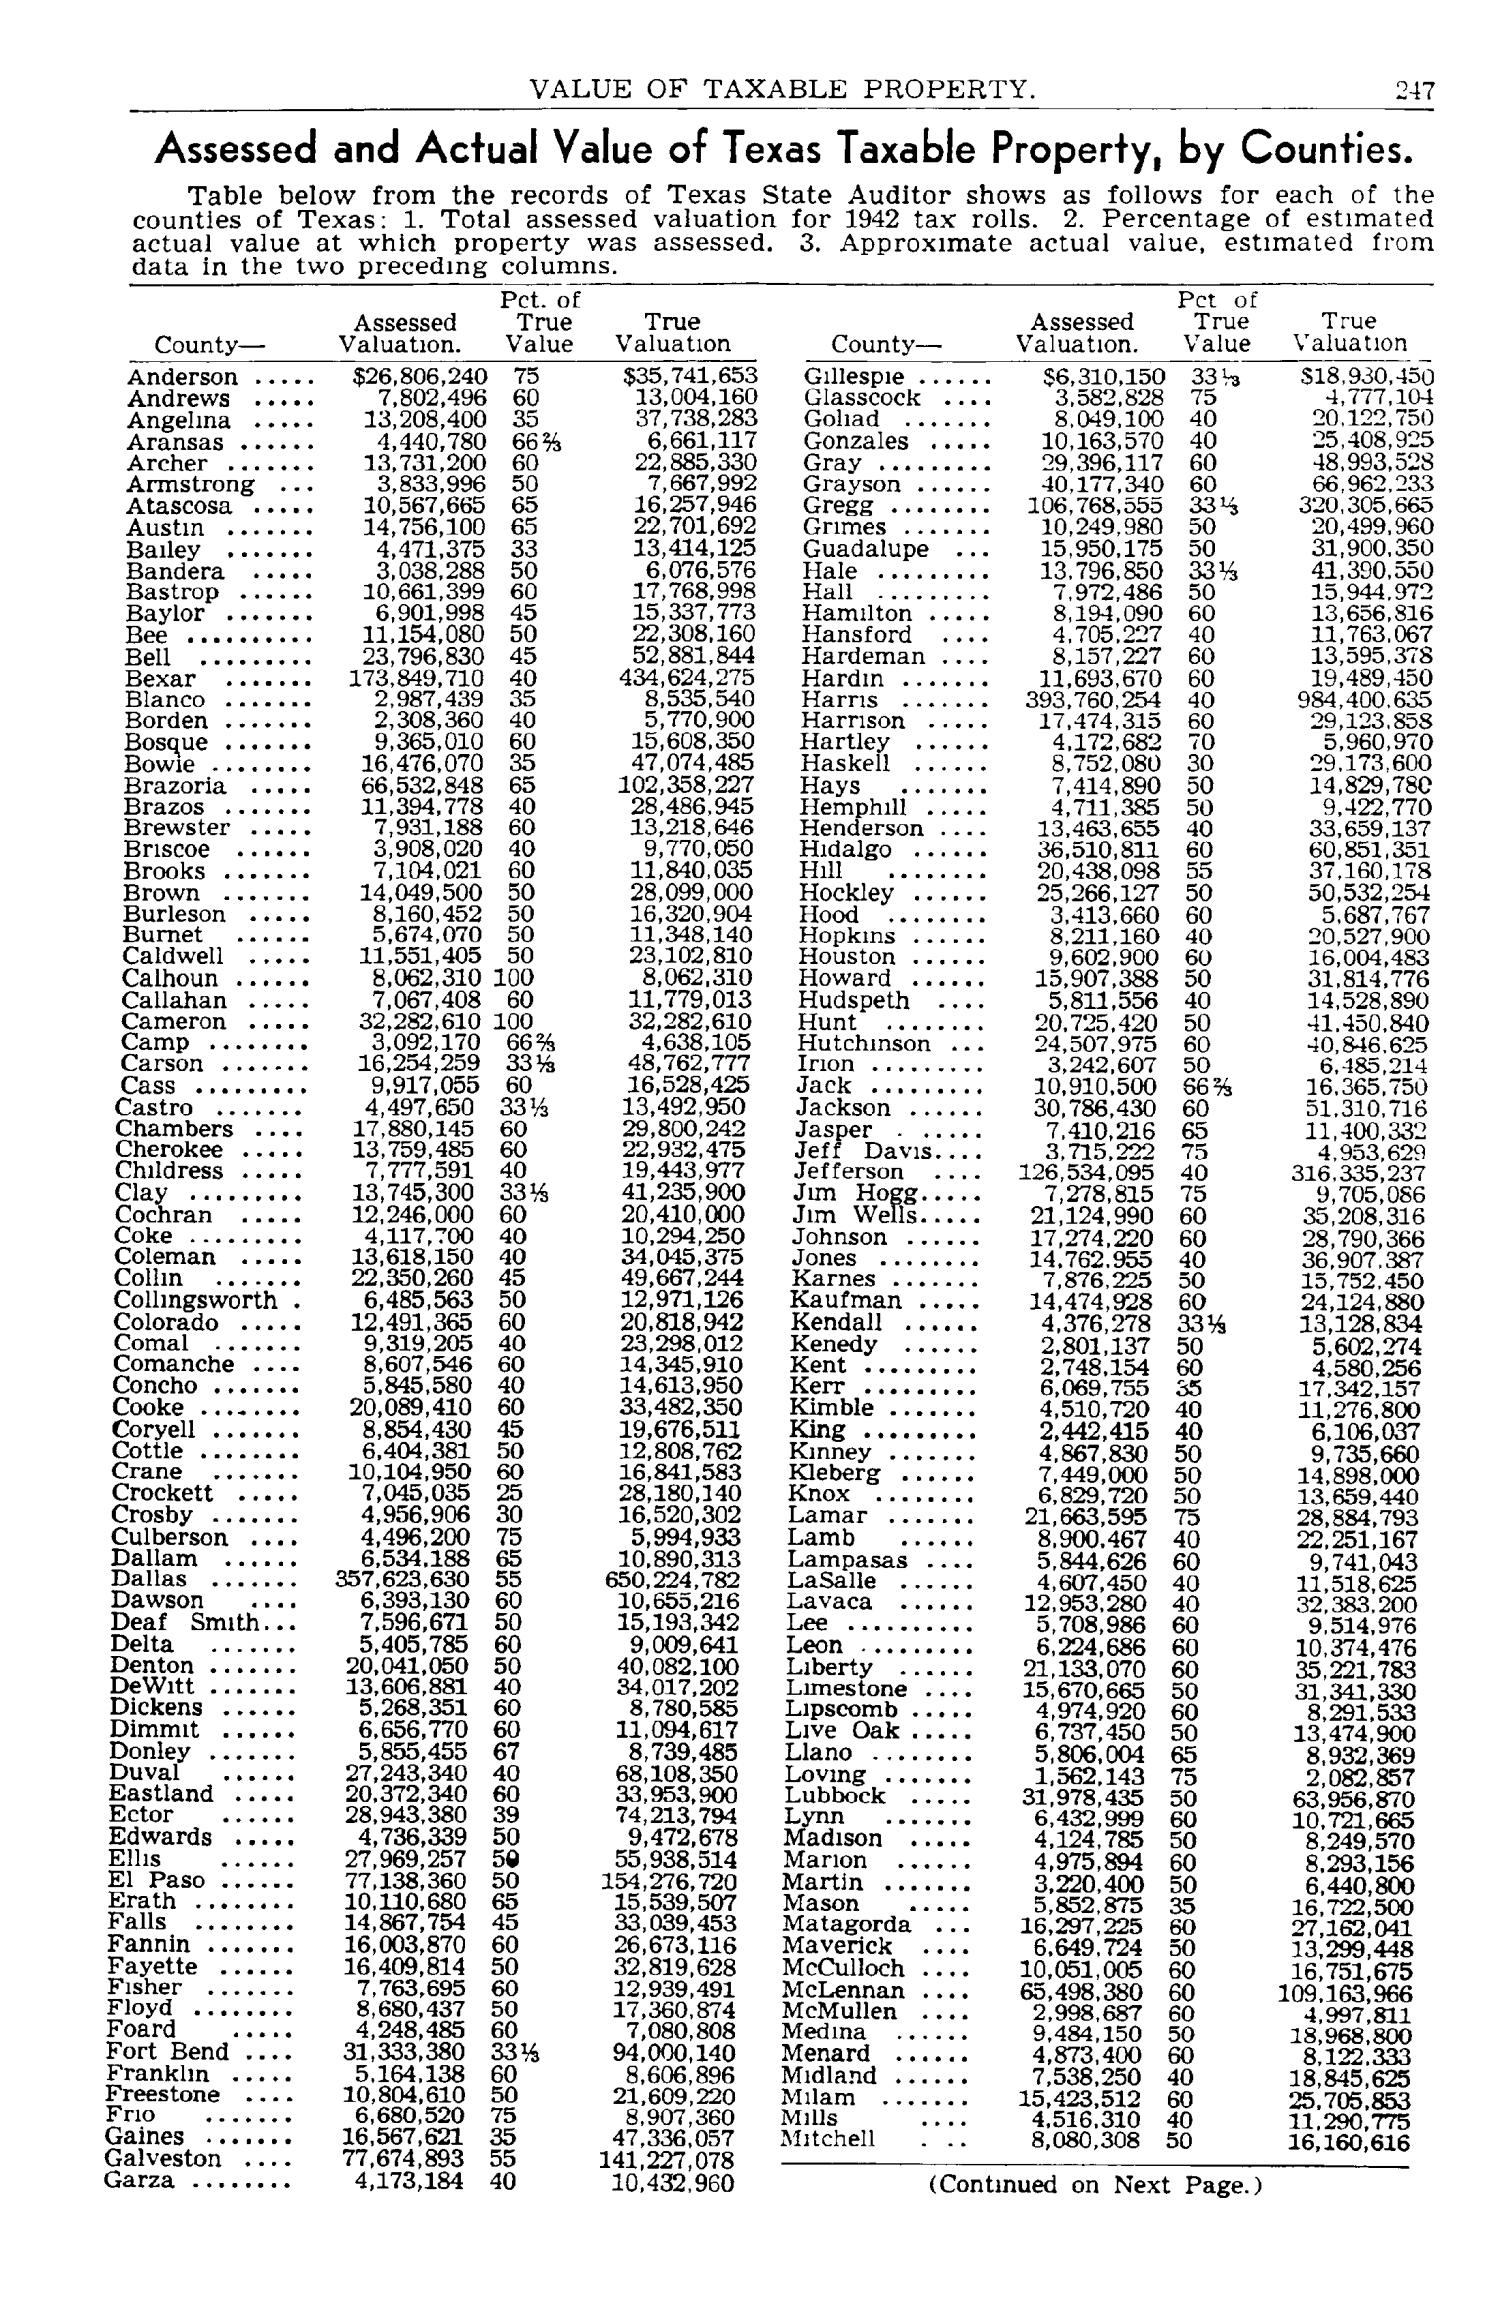 Texas Almanac, 1943-1944
                                                
                                                    247
                                                